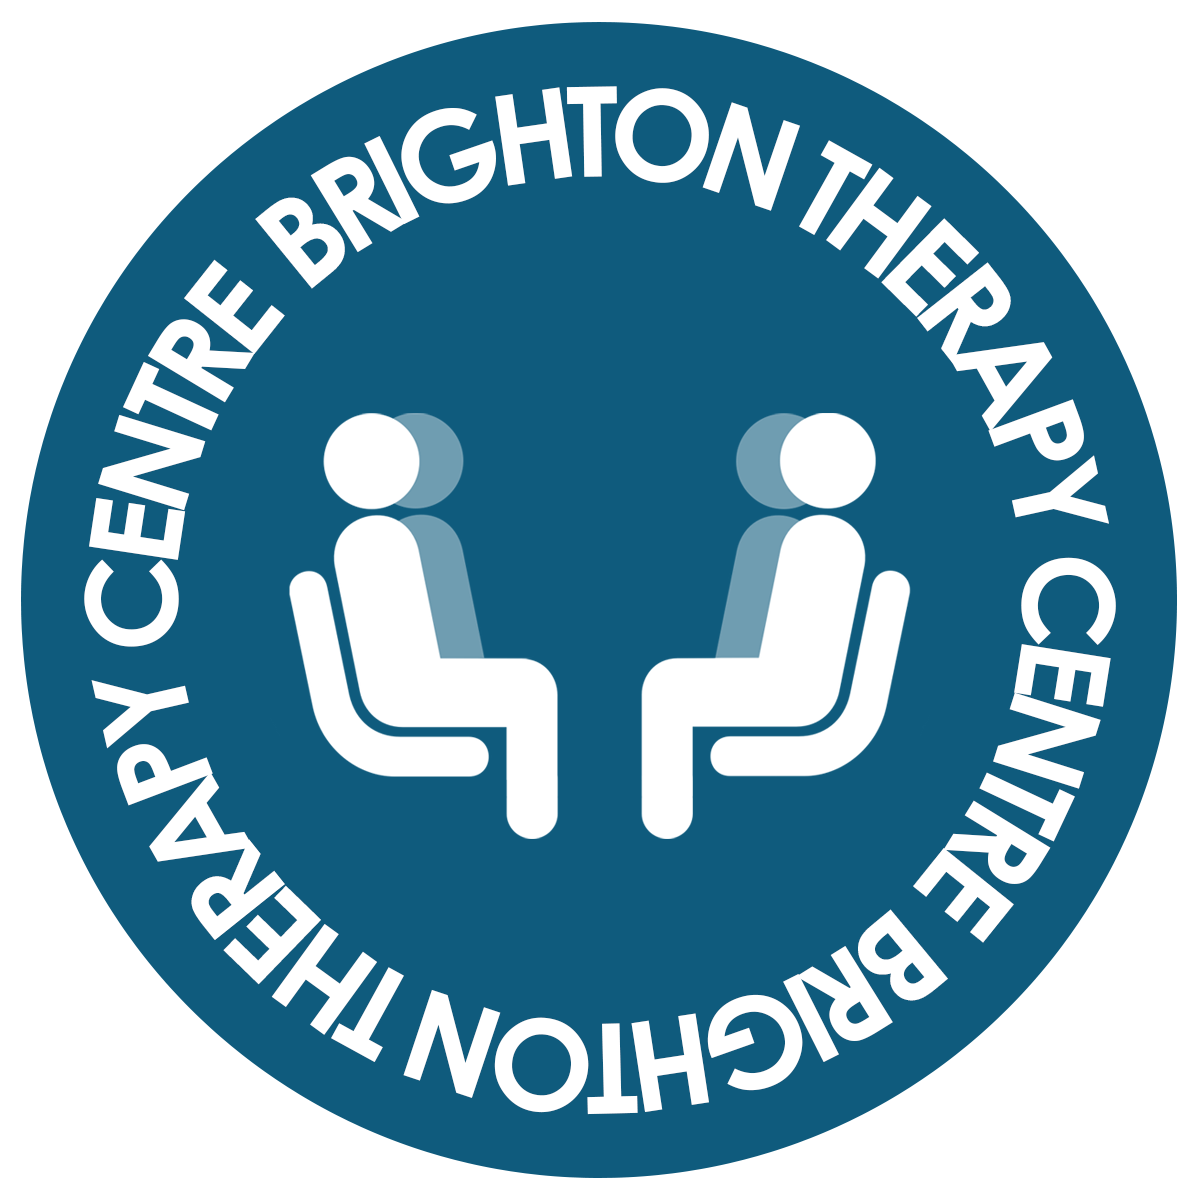 brighton therapy centre